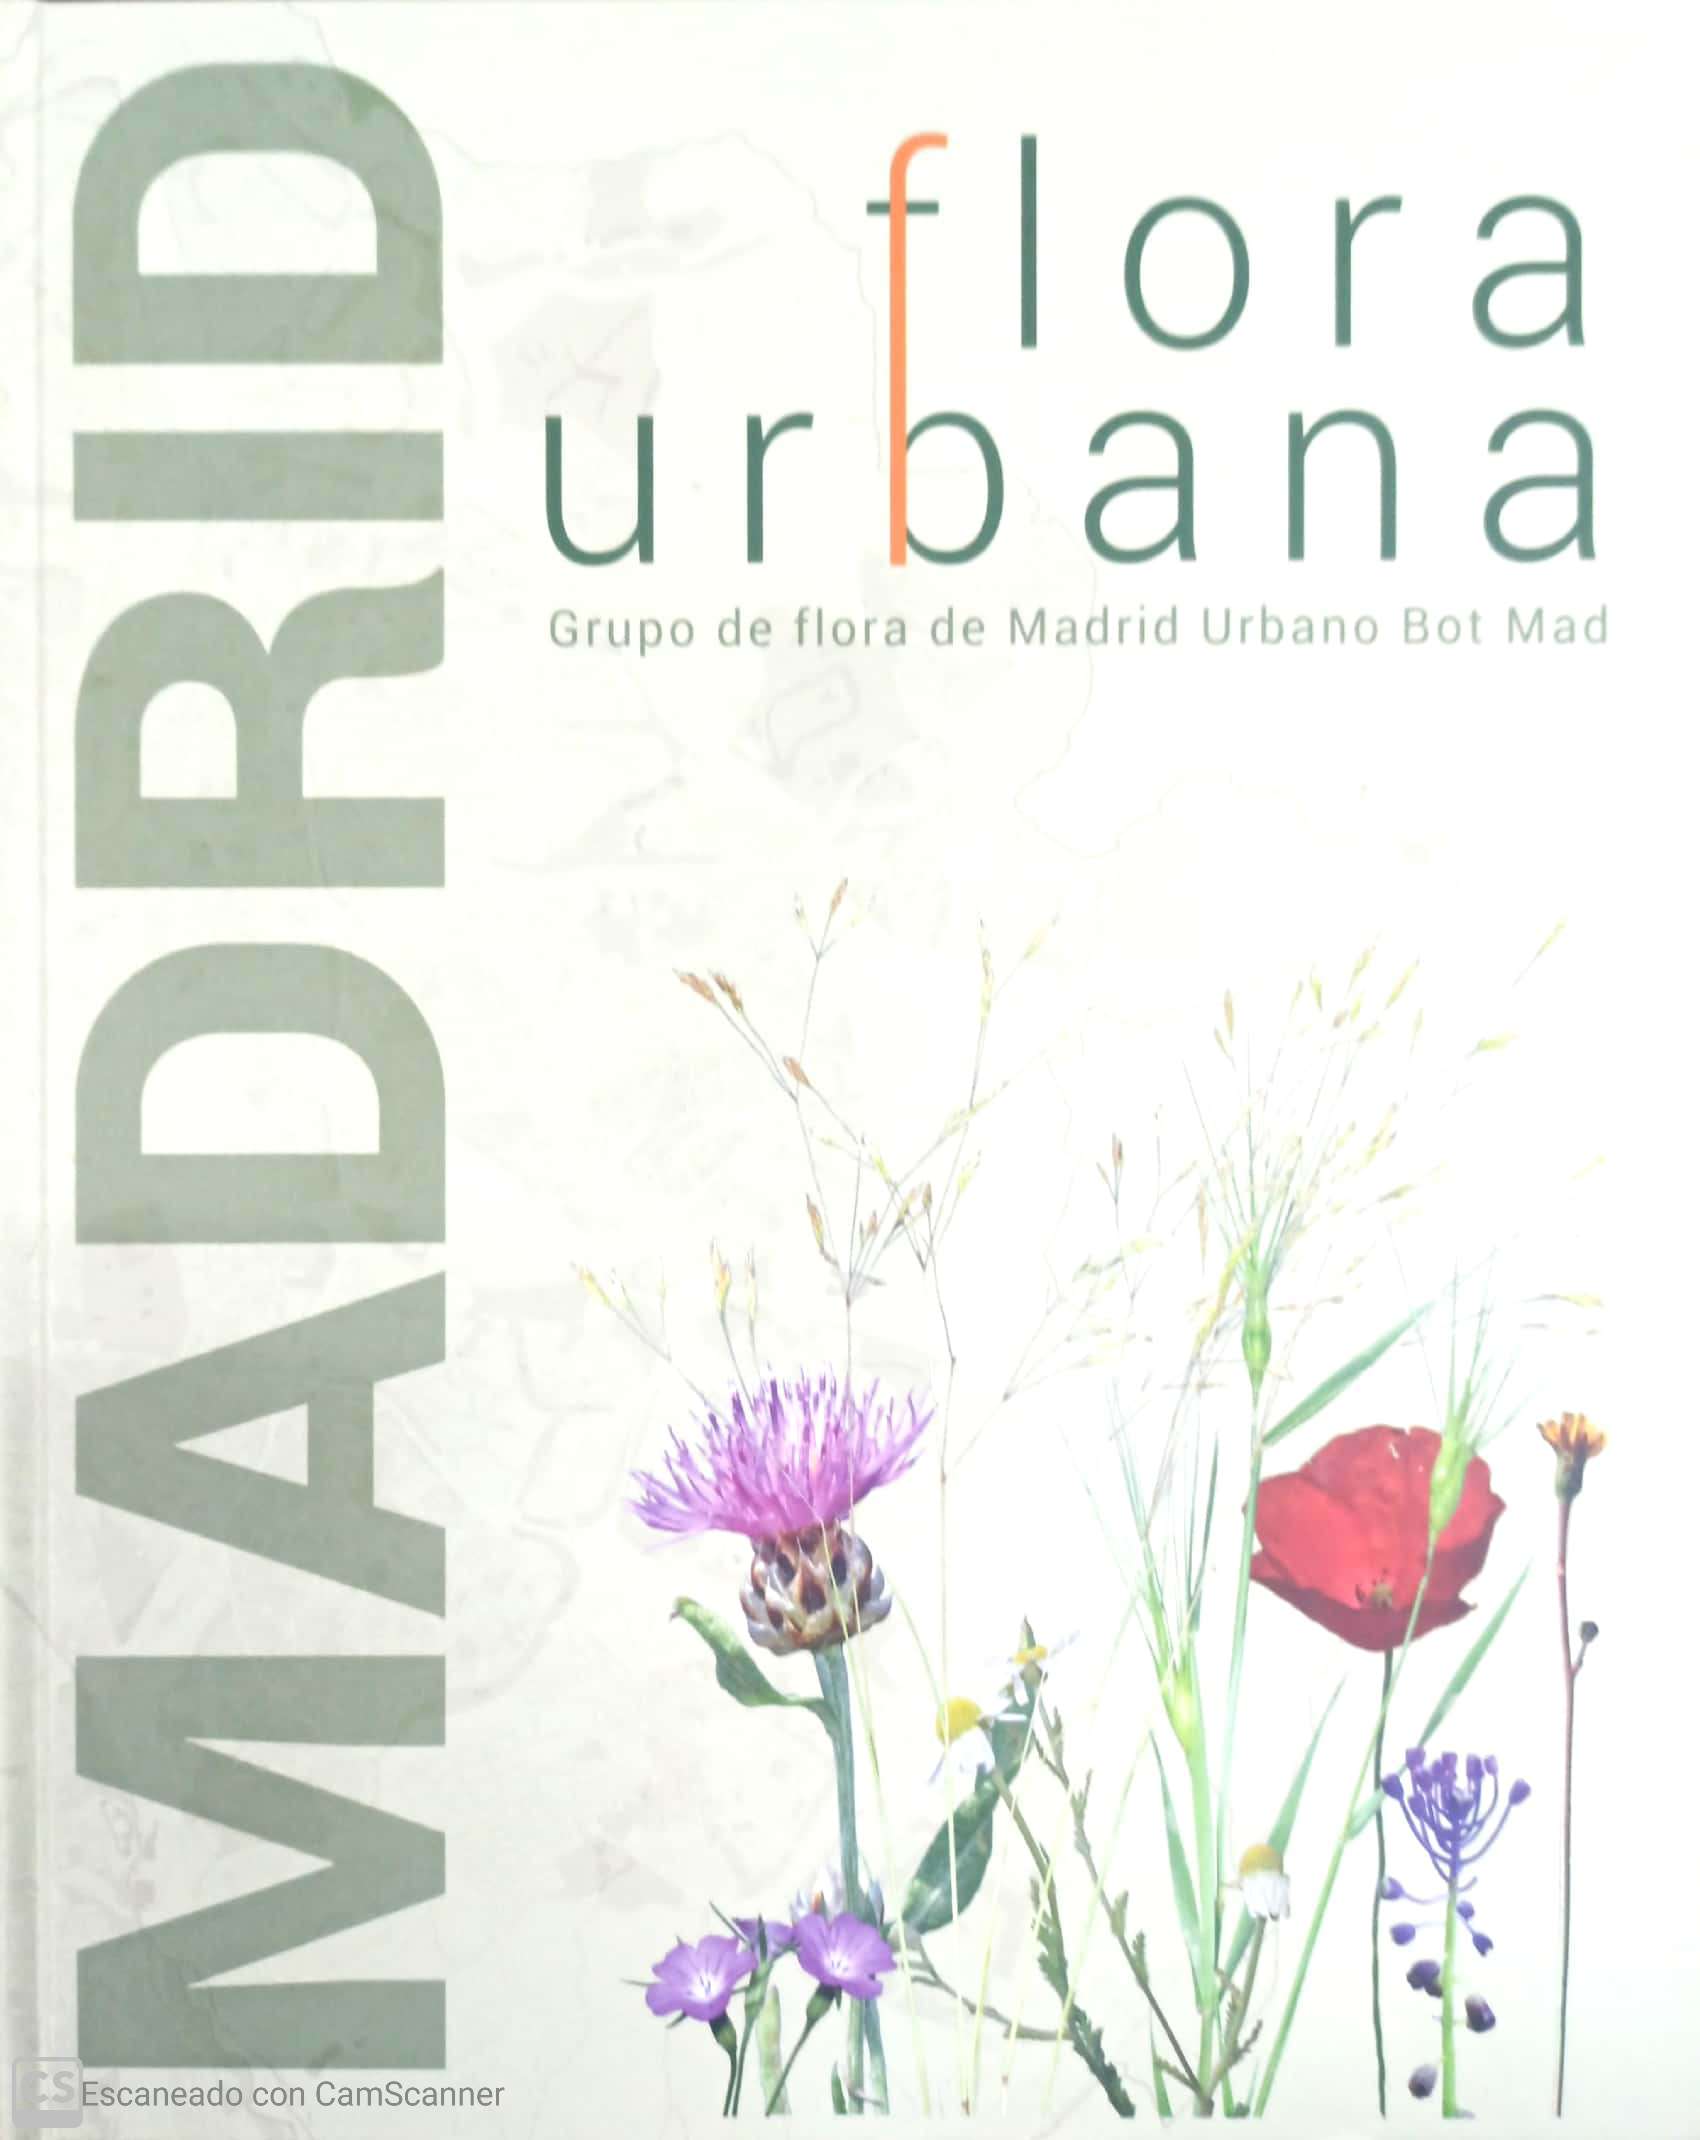 FLORA URBANA. Grupo de flora de Madrid Urbano Bot Mad